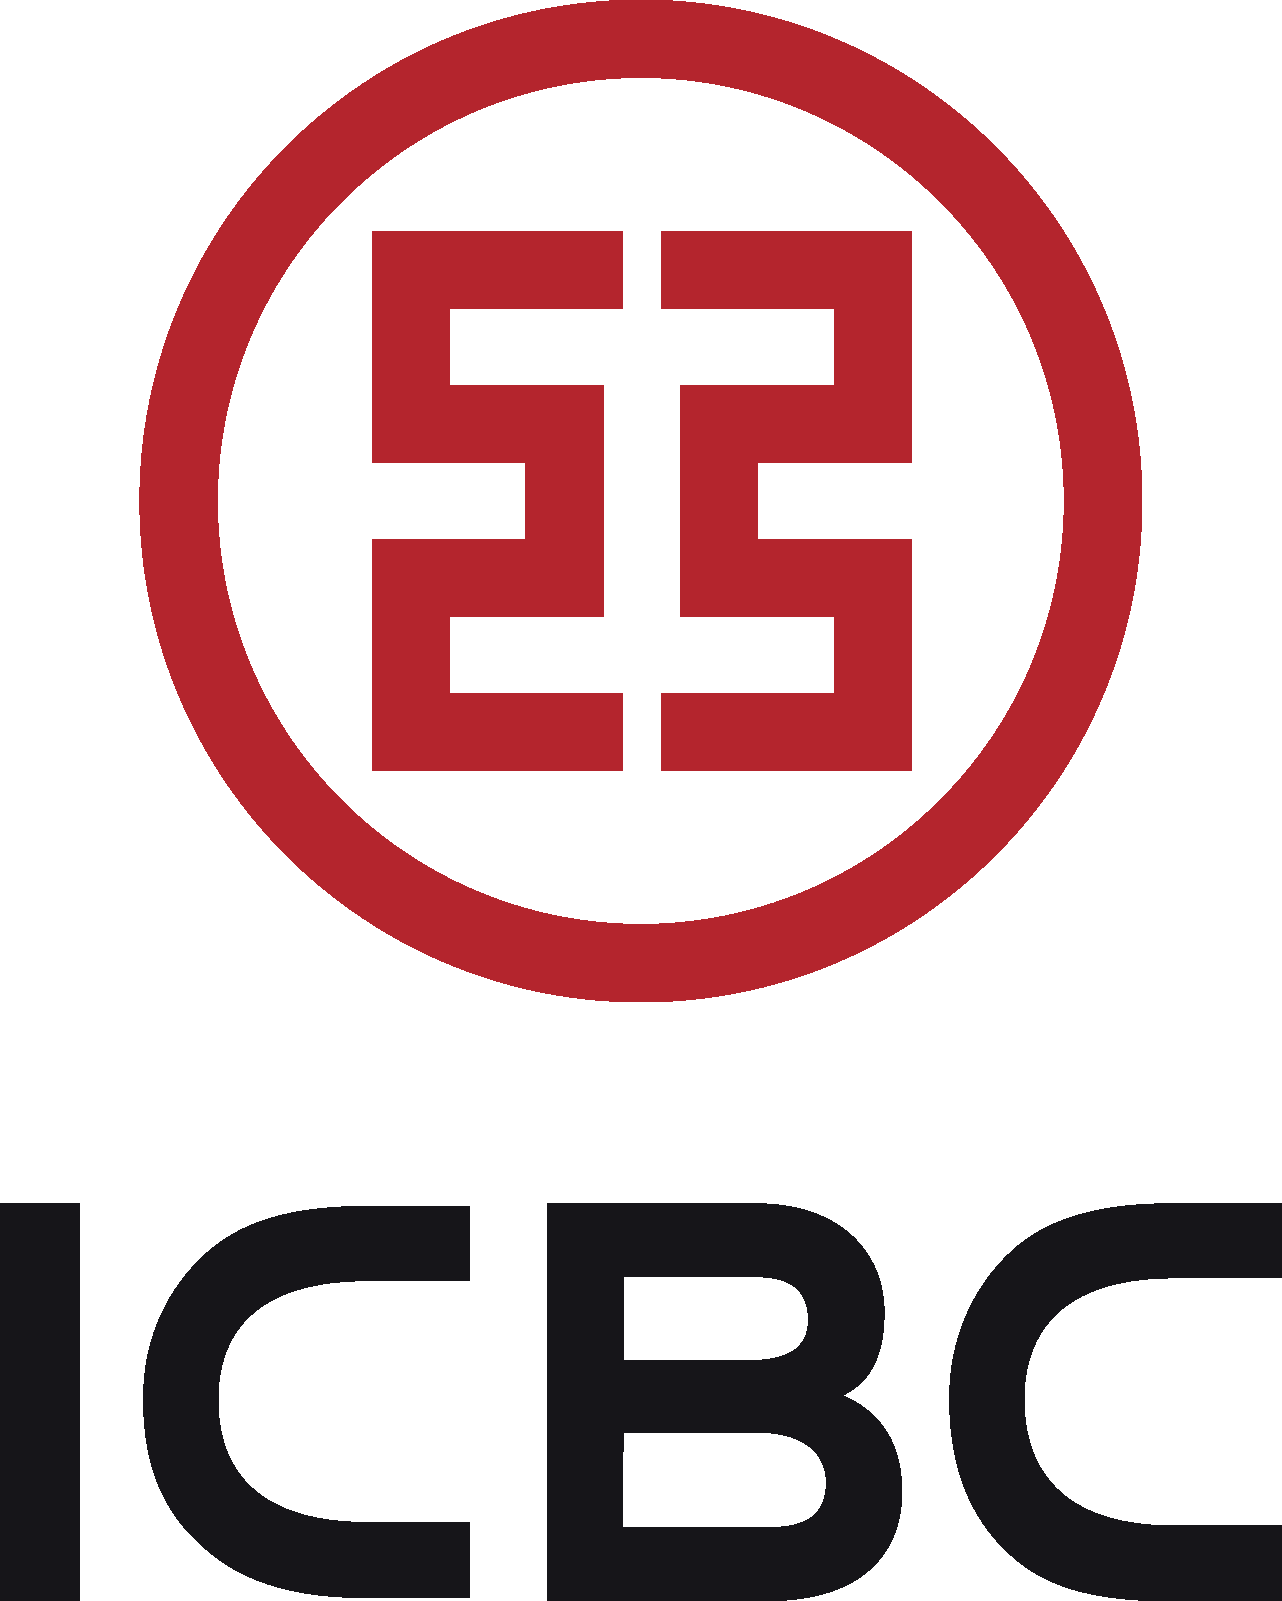 ICBC - Industrial and Commercial Bank of China - Международный коммерческий банк Китая - Промышленно - коммерческий банк Китая - Торгово-промышленный банк Китая - АйСиБиСи банк